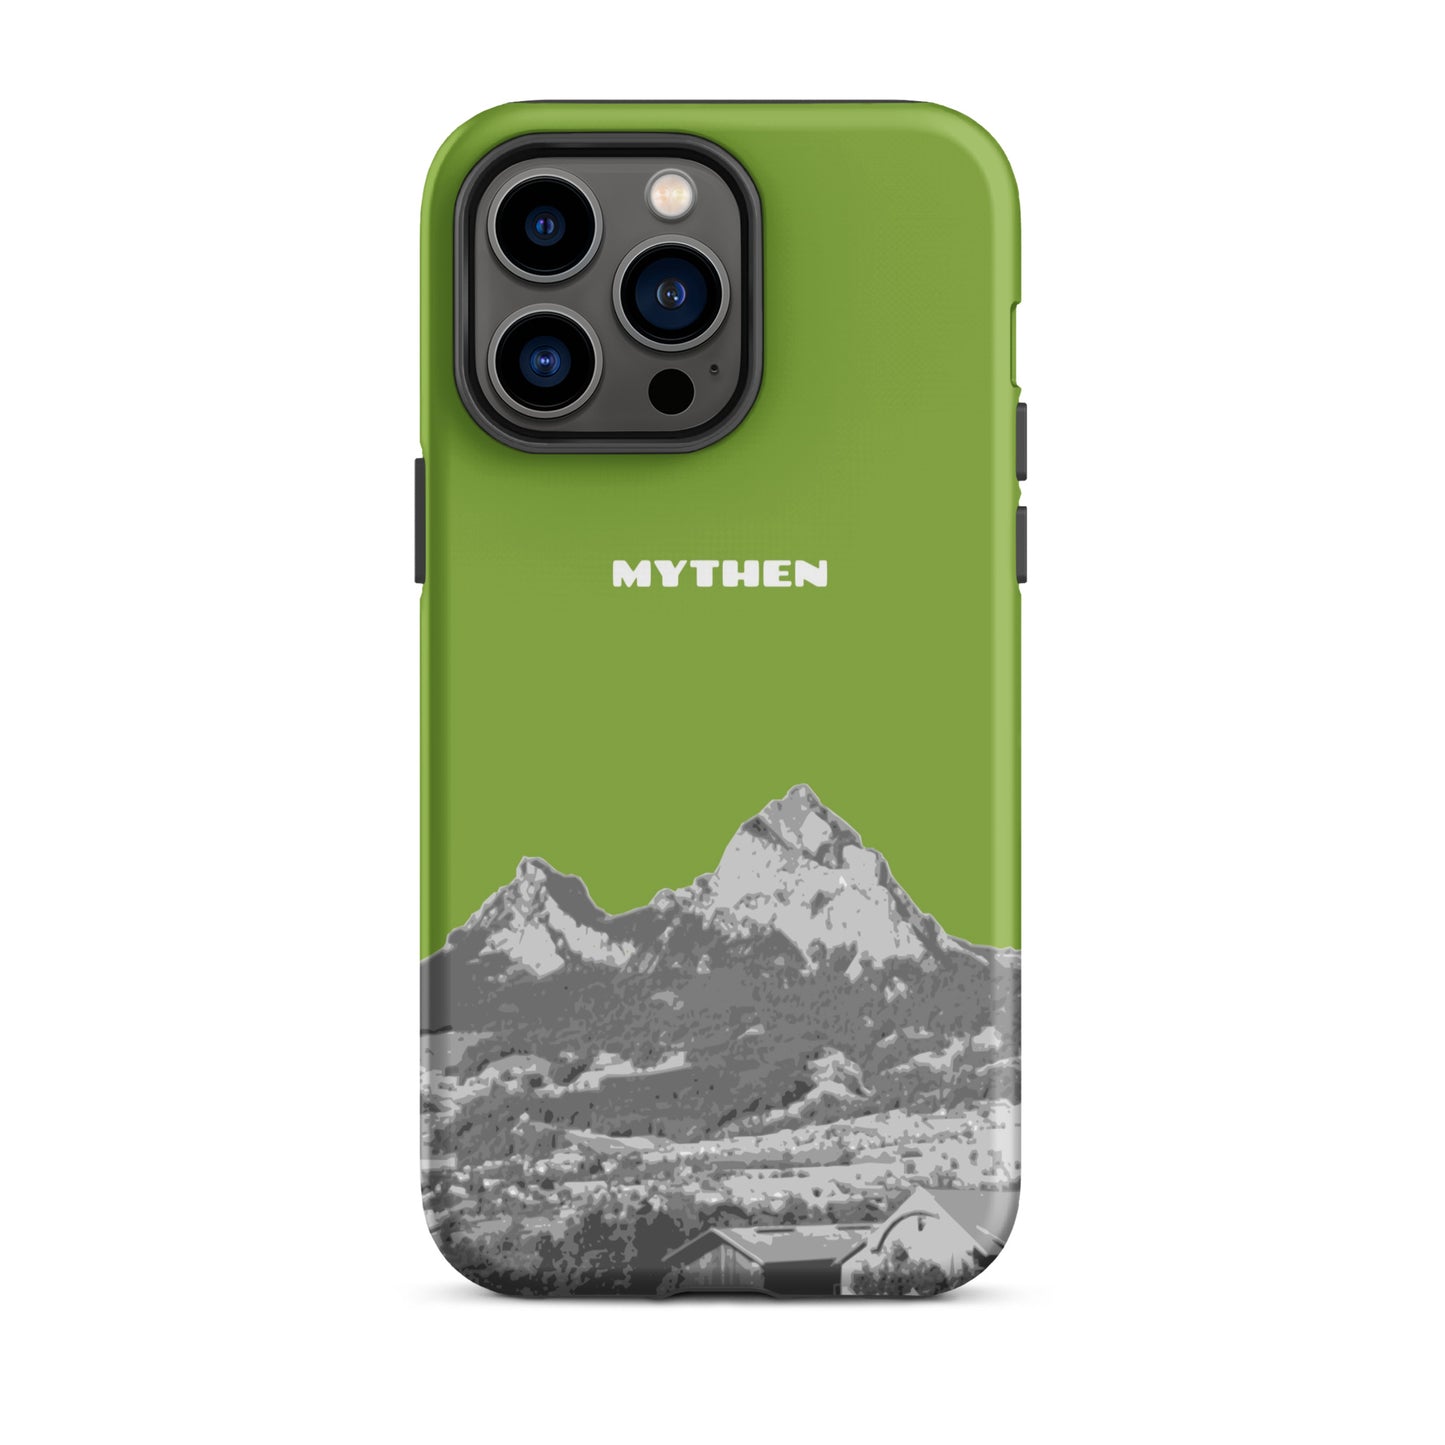 Hülle für das iPhone 14 Pro Max von Apple in der Farbe Gelbgrün, die den Grossen Mythen und den Kleinen Mythen bei Schwyz zeigt. 